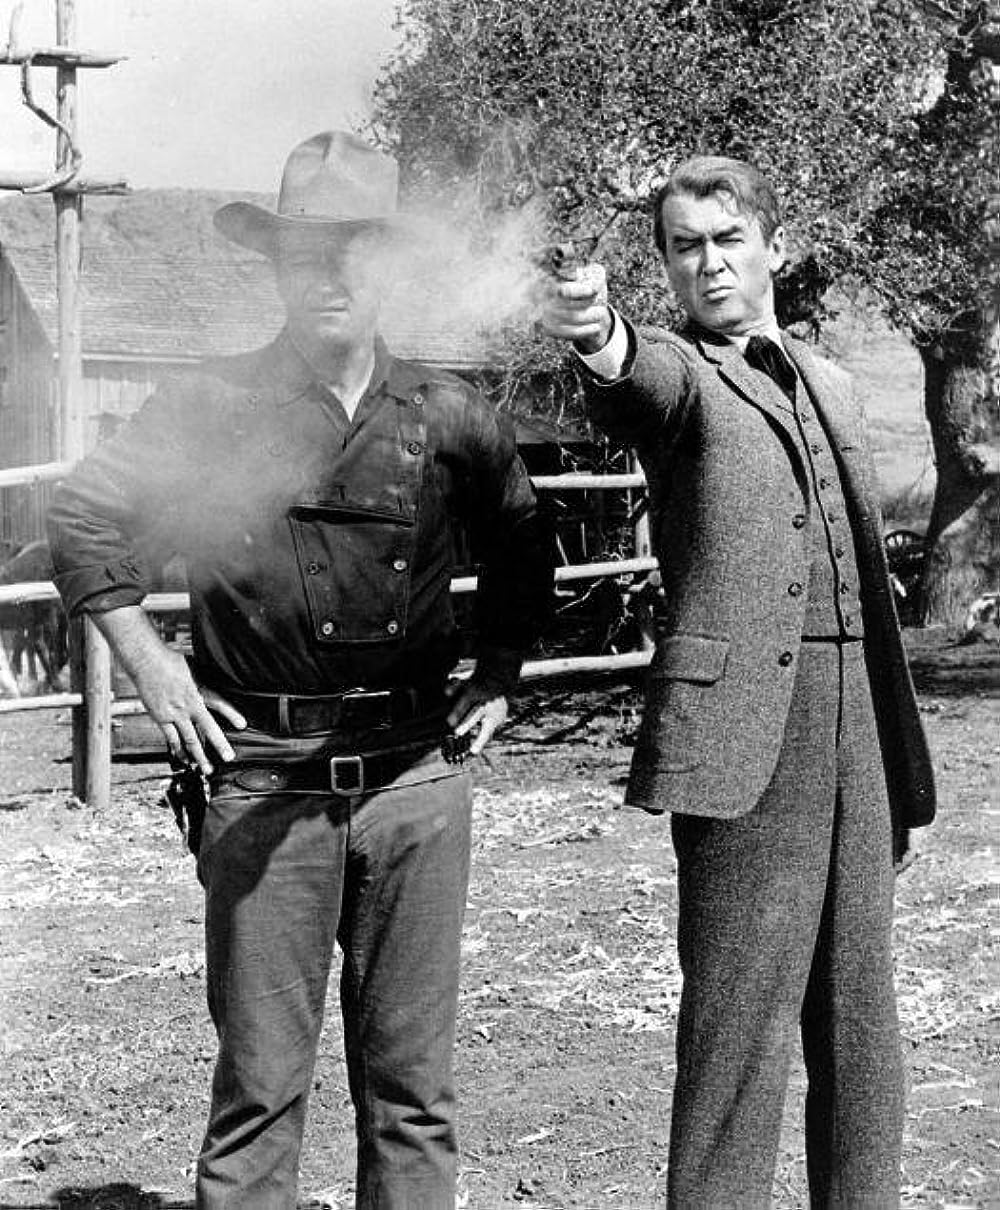 「リバティ・バランスを射った男」ジェームズ・スチュワート & ジョン・ウェインの画像